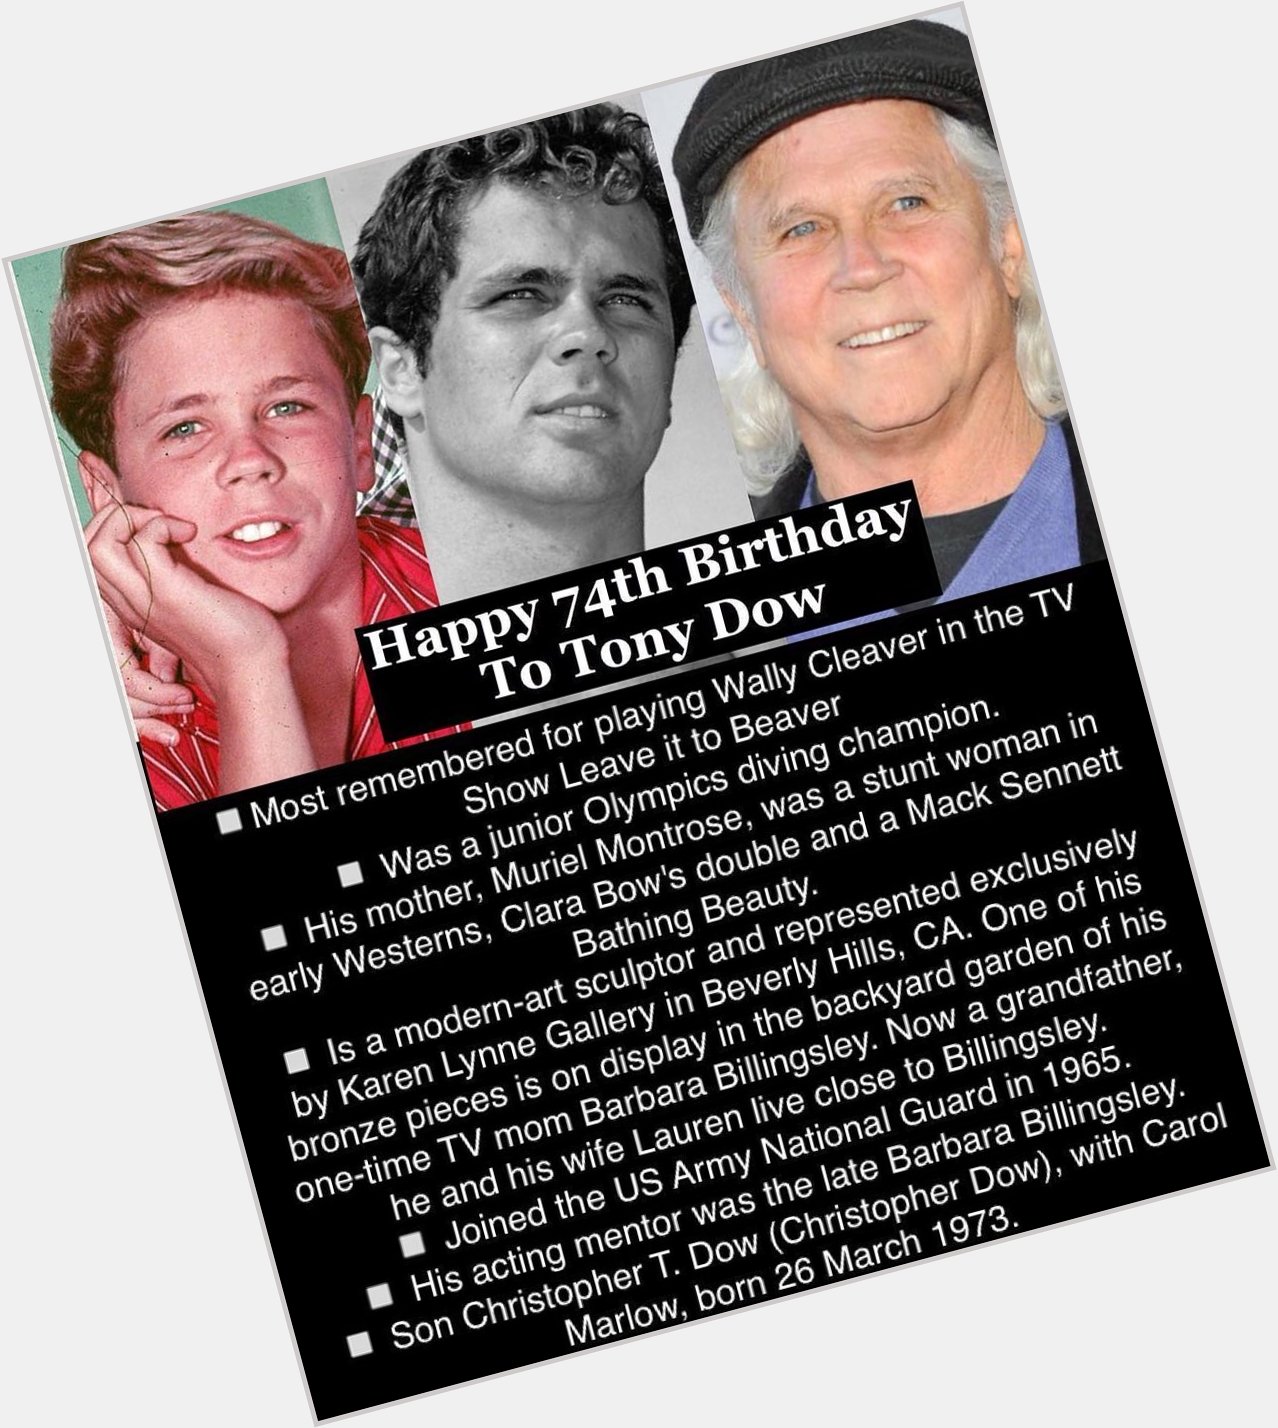 April 13: Happy 74th Birthday to Tony Dow 